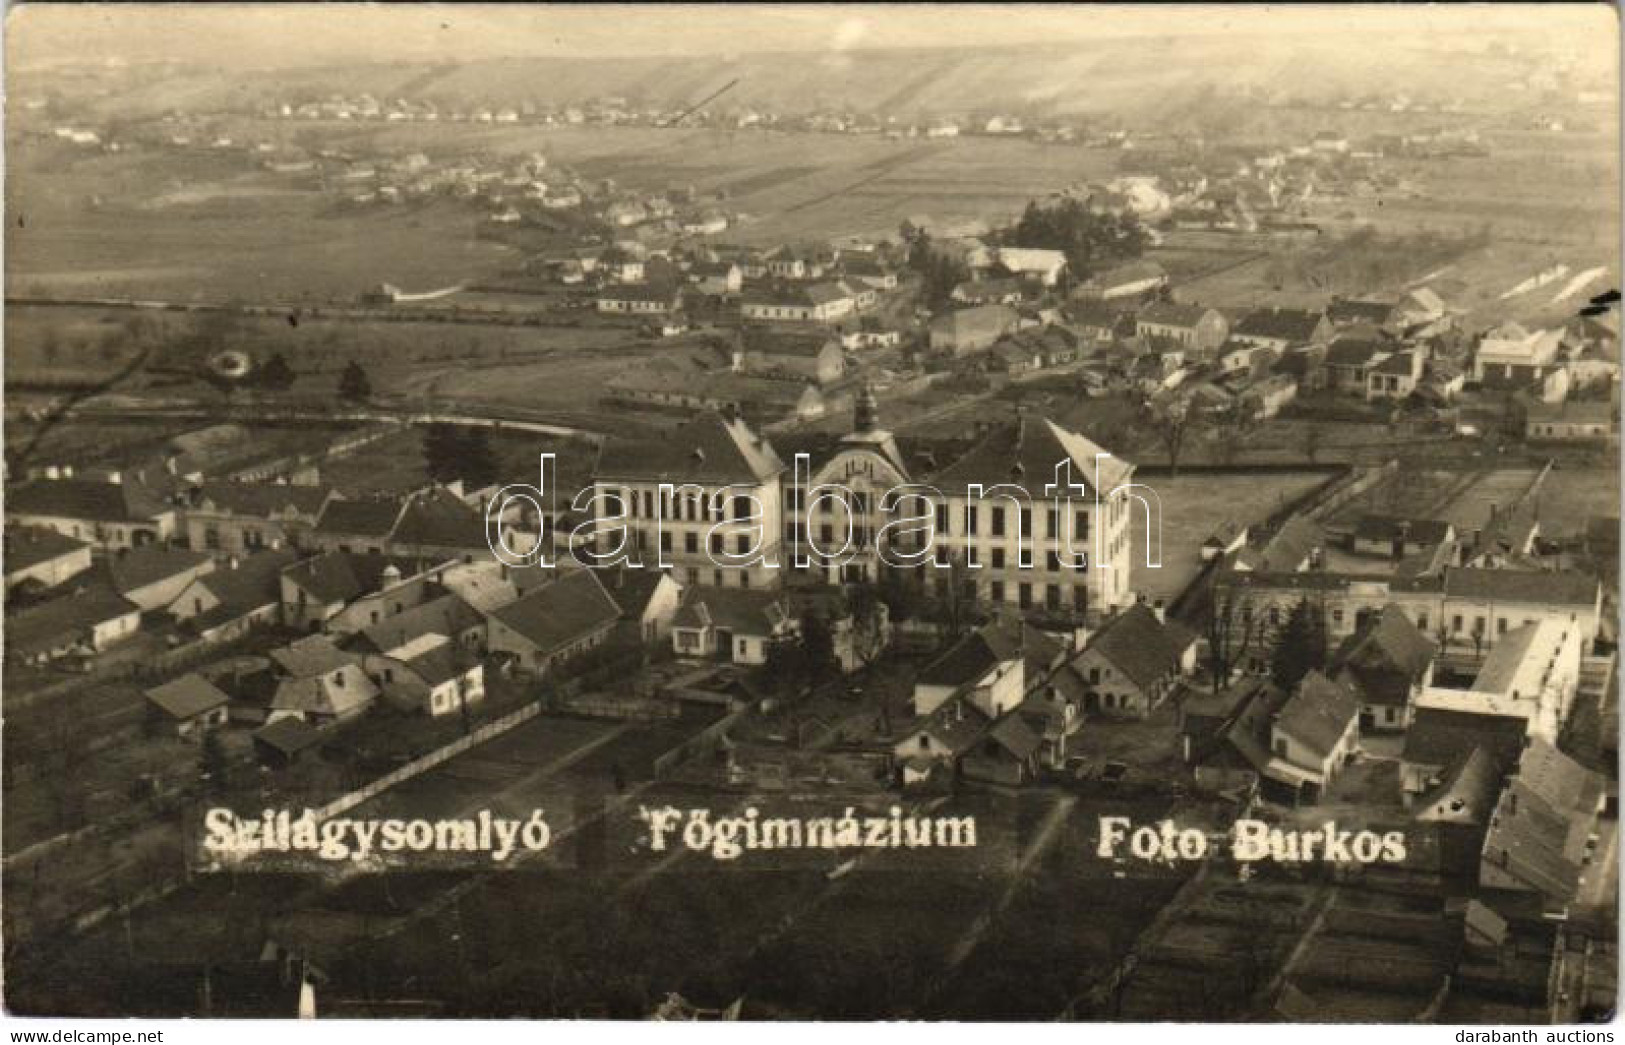 T2 Szilágysomlyó, Simleu Silvaniei; Főgimnázium / Grammar School. Foto Burkos Photo + "1940 Szilágysomlyó Visszatért" So - Sin Clasificación